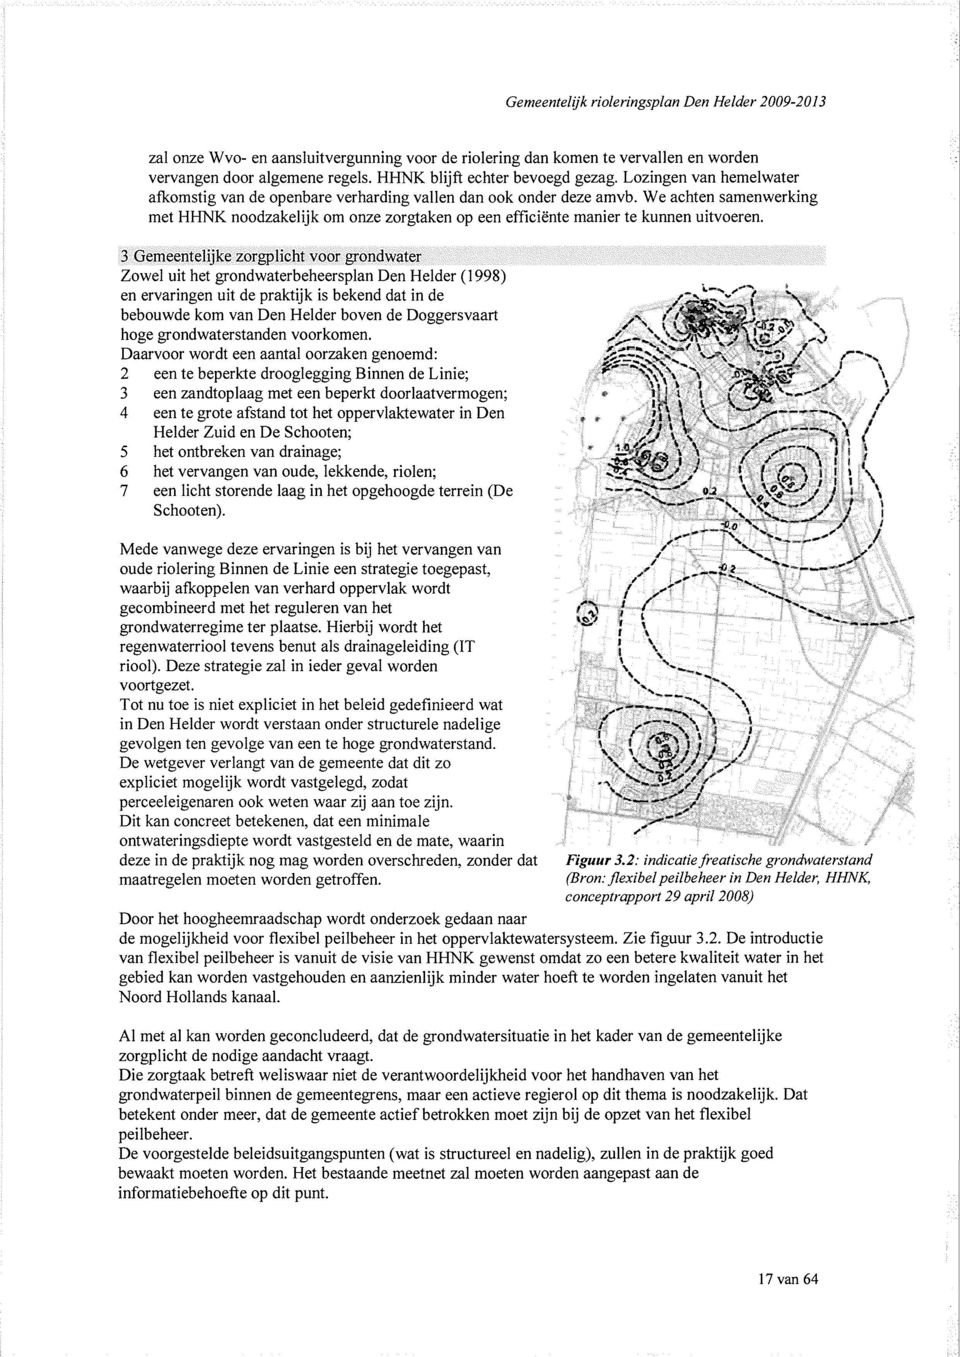 Gemeenteljke zorgplcht voor grondwater Zowel ut het grondwaterbeheerplan Den Helder (99) en ervarngen ut de praktjk bekend dat n de /^SSLC'"* \ bebouwde kom van Den Helder boven de Doggervaart A